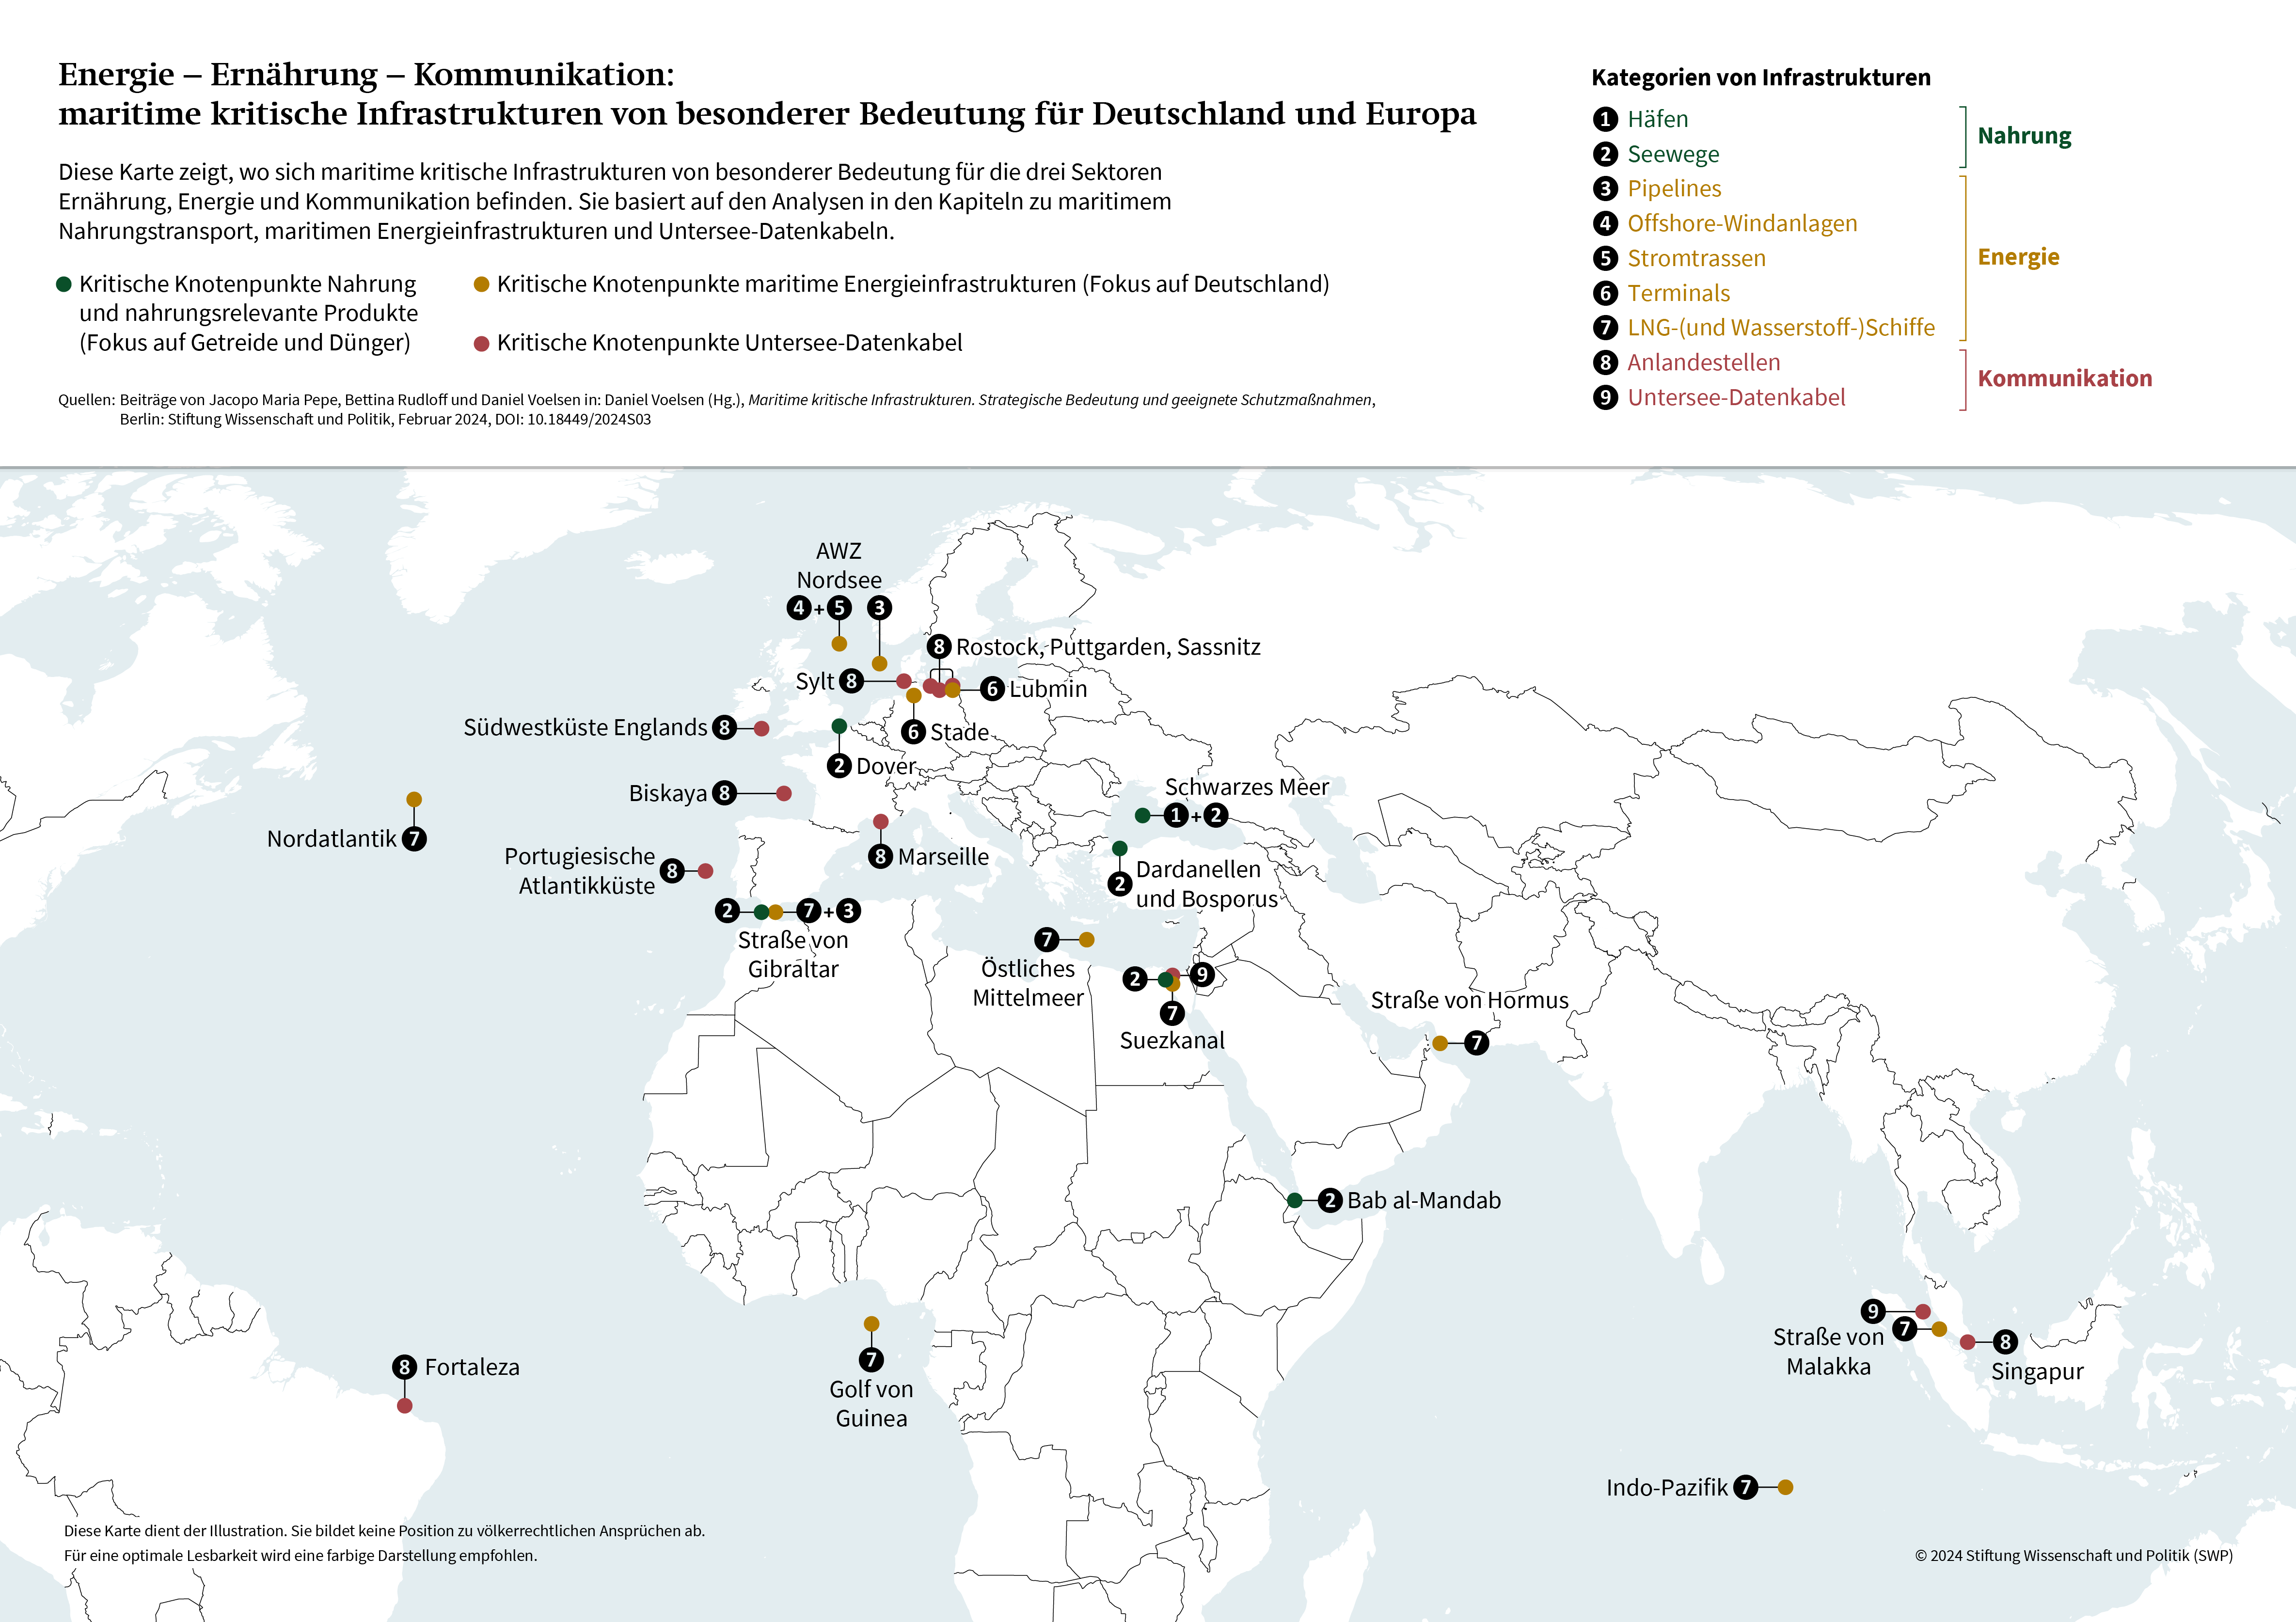 Karte: Maritime kritische Infrastrukturen von besonderer Bedeutung für Deutschland und Europa